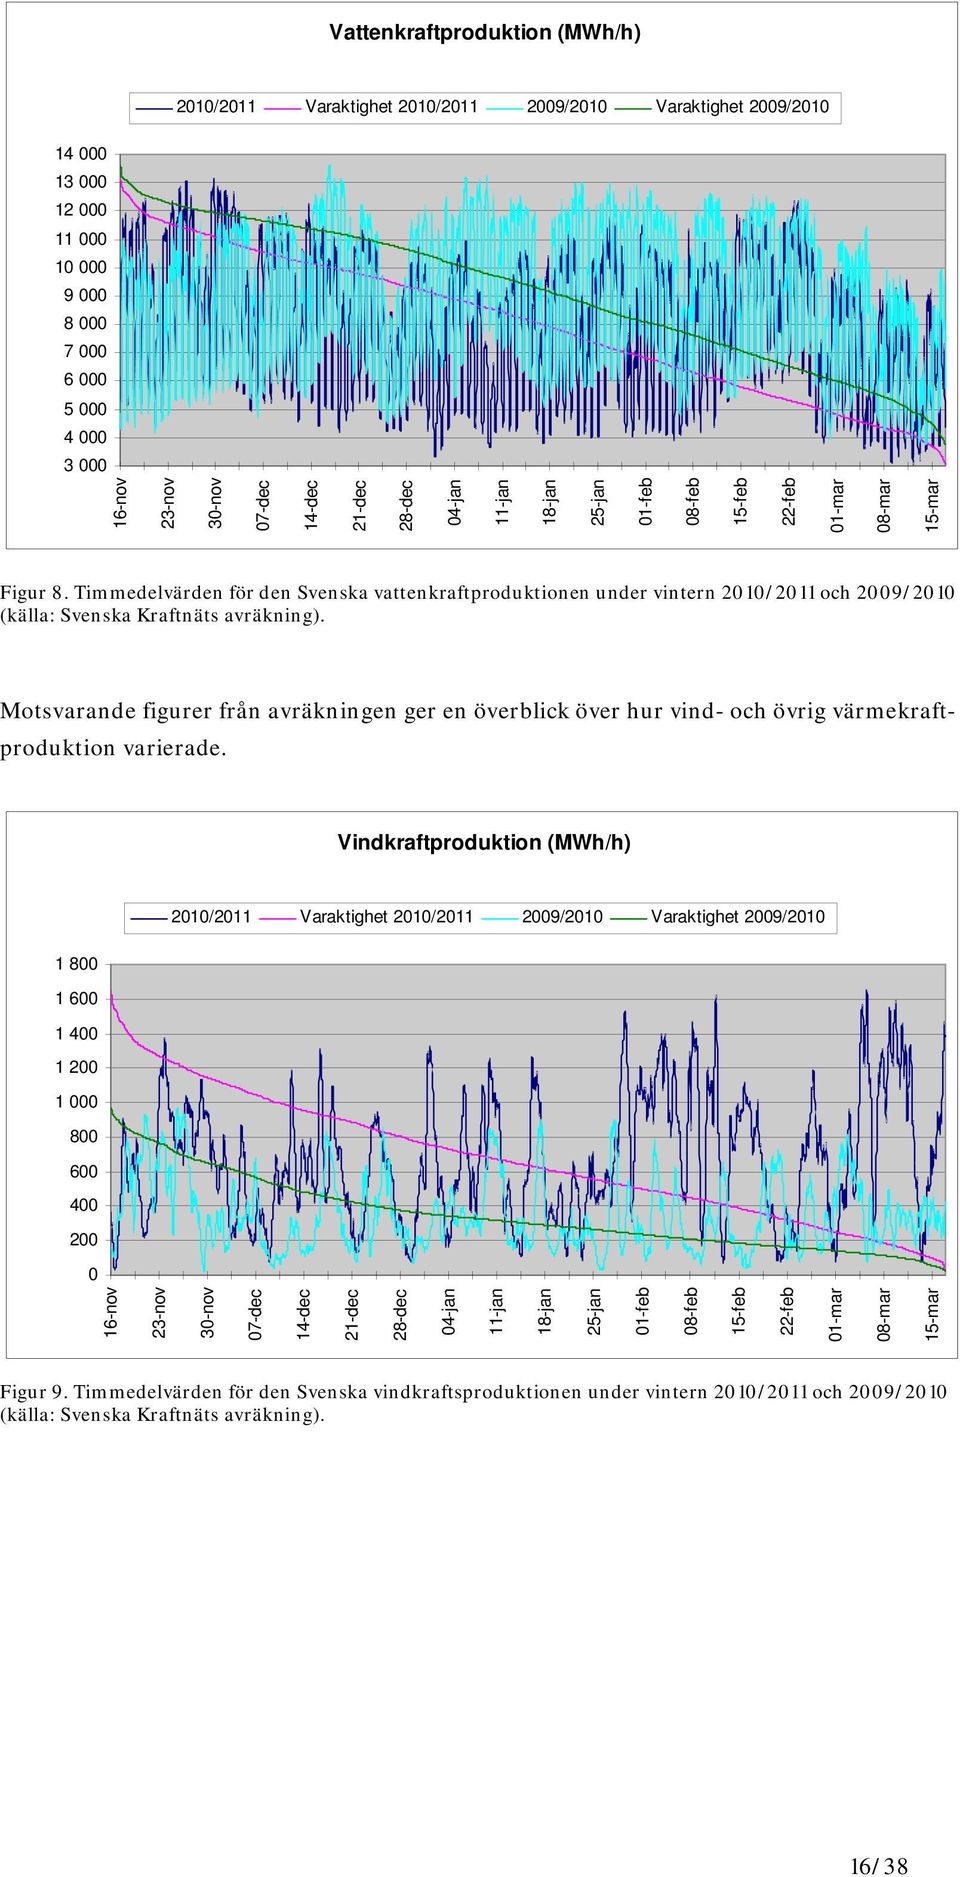 Timmedelvärden för den Svenska vattenkraftproduktionen under vintern 2010/2011 och 2009/2010 (källa: Svenska Kraftnäts avräkning).